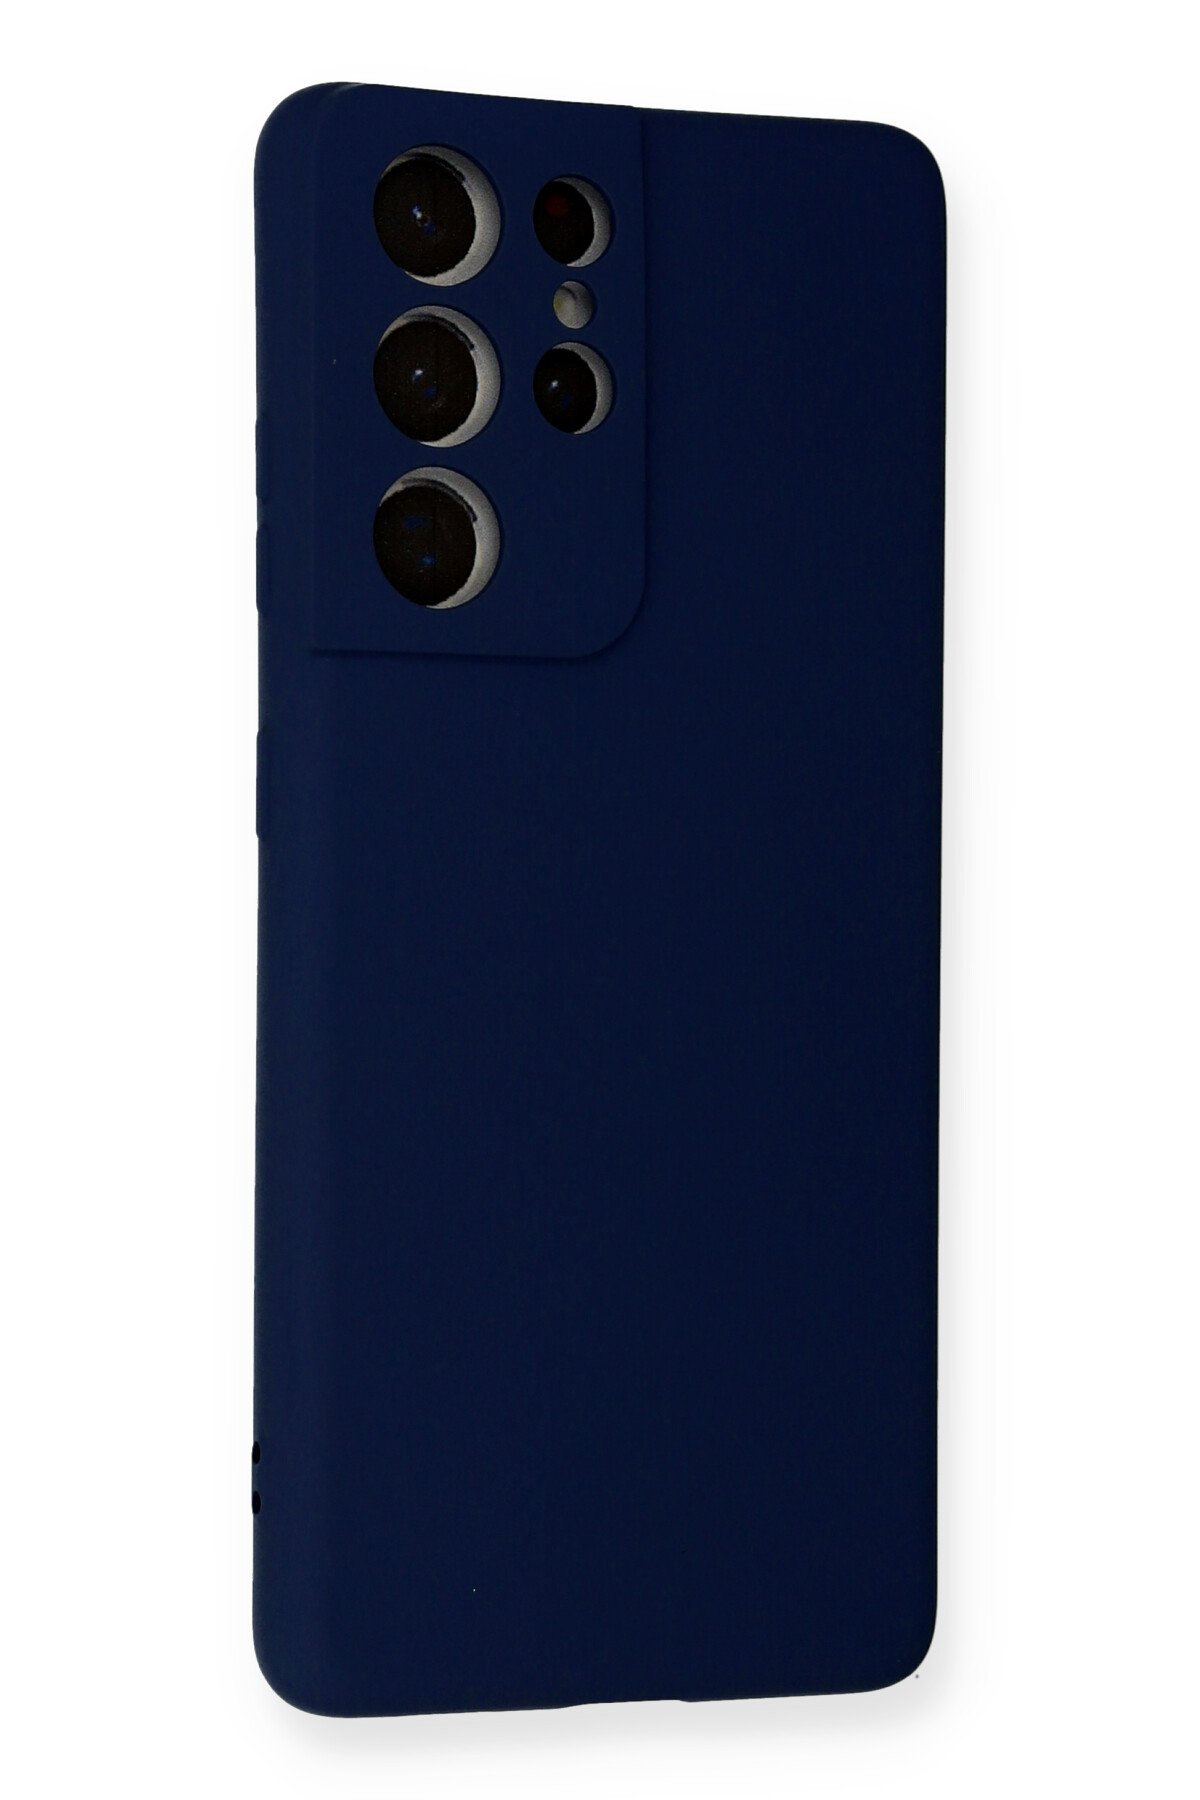 Newface Samsung Galaxy S21 Ultra Kılıf Platin Silikon - Mavi